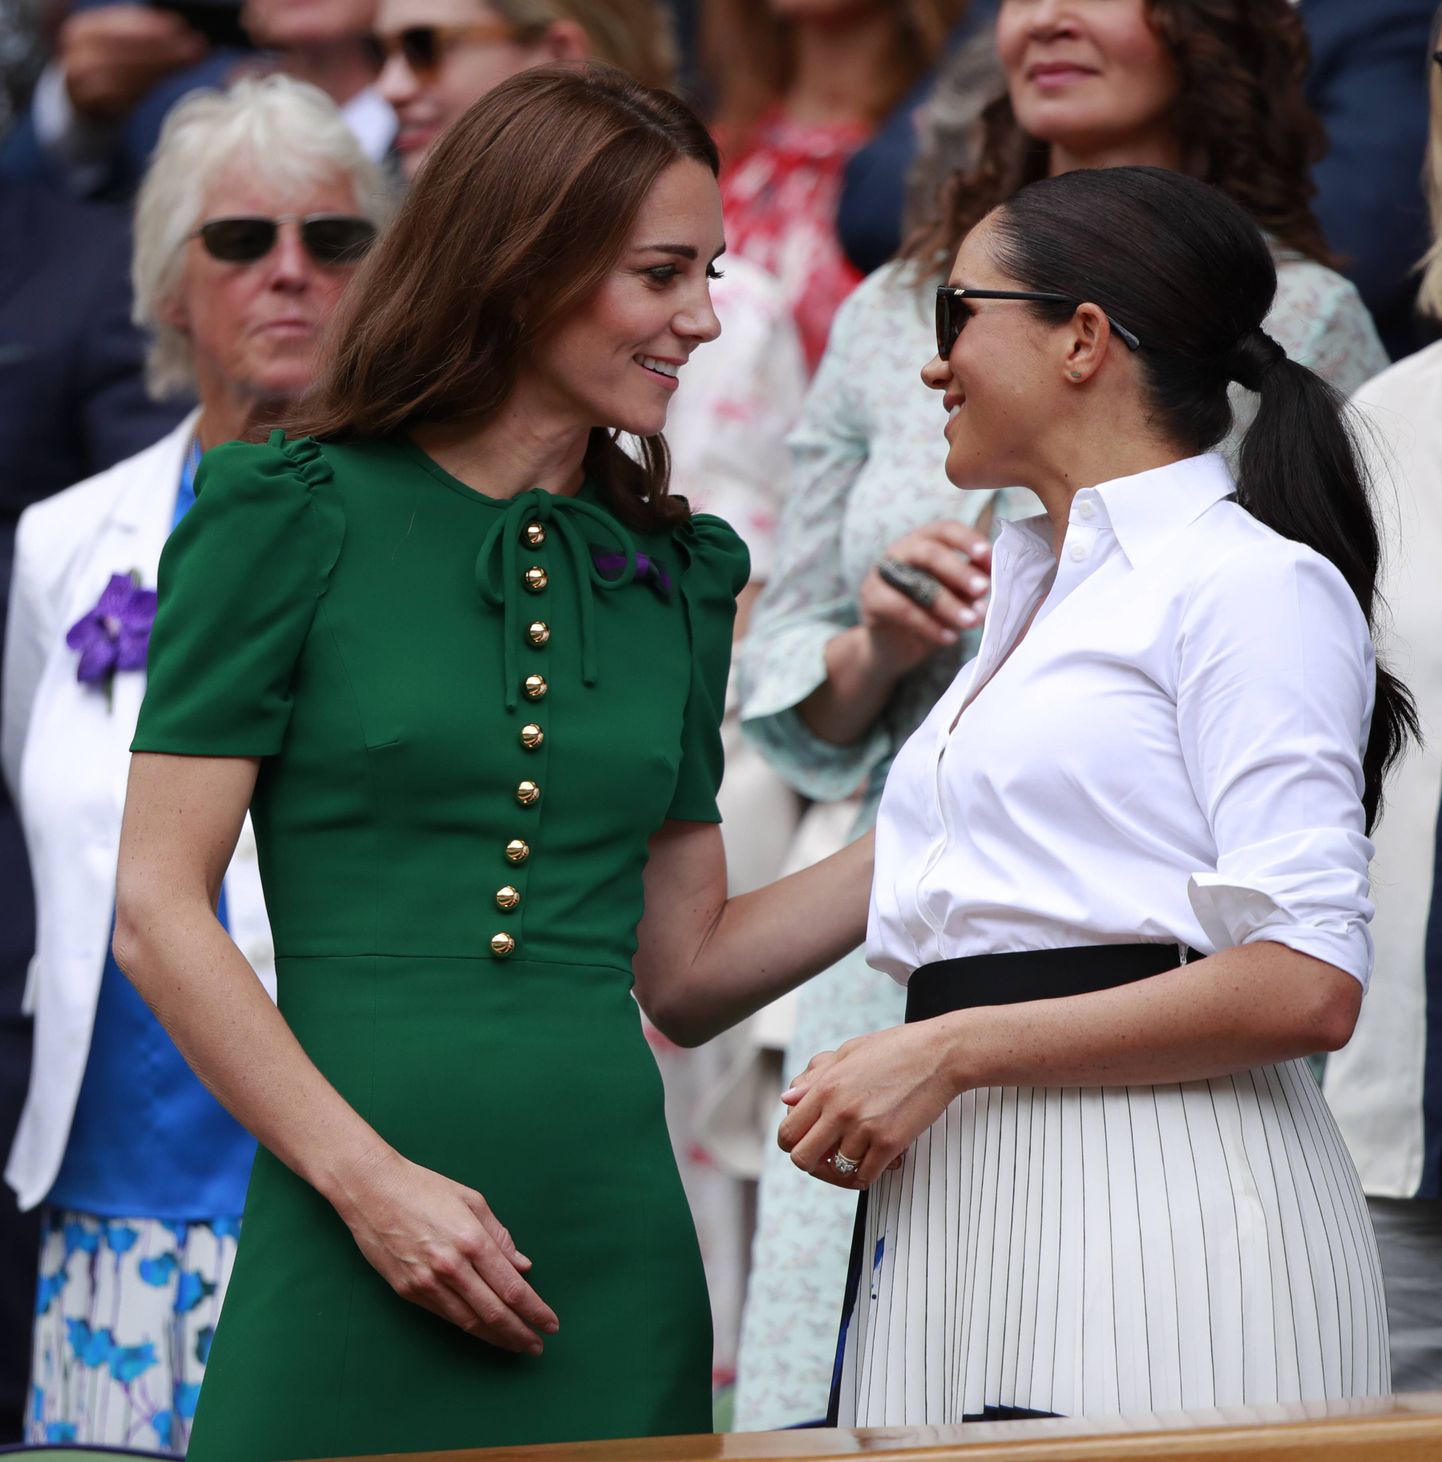 Cambridge'i hertsoginna Catherine (vasakul) ja Sussexi hertsoginna Meghan 13. juulil 2019 Wimbledoni tenniseturniiril vaatamas naiste üksikmängu finaali Serena Williamsi ja Simona Halepi vahel